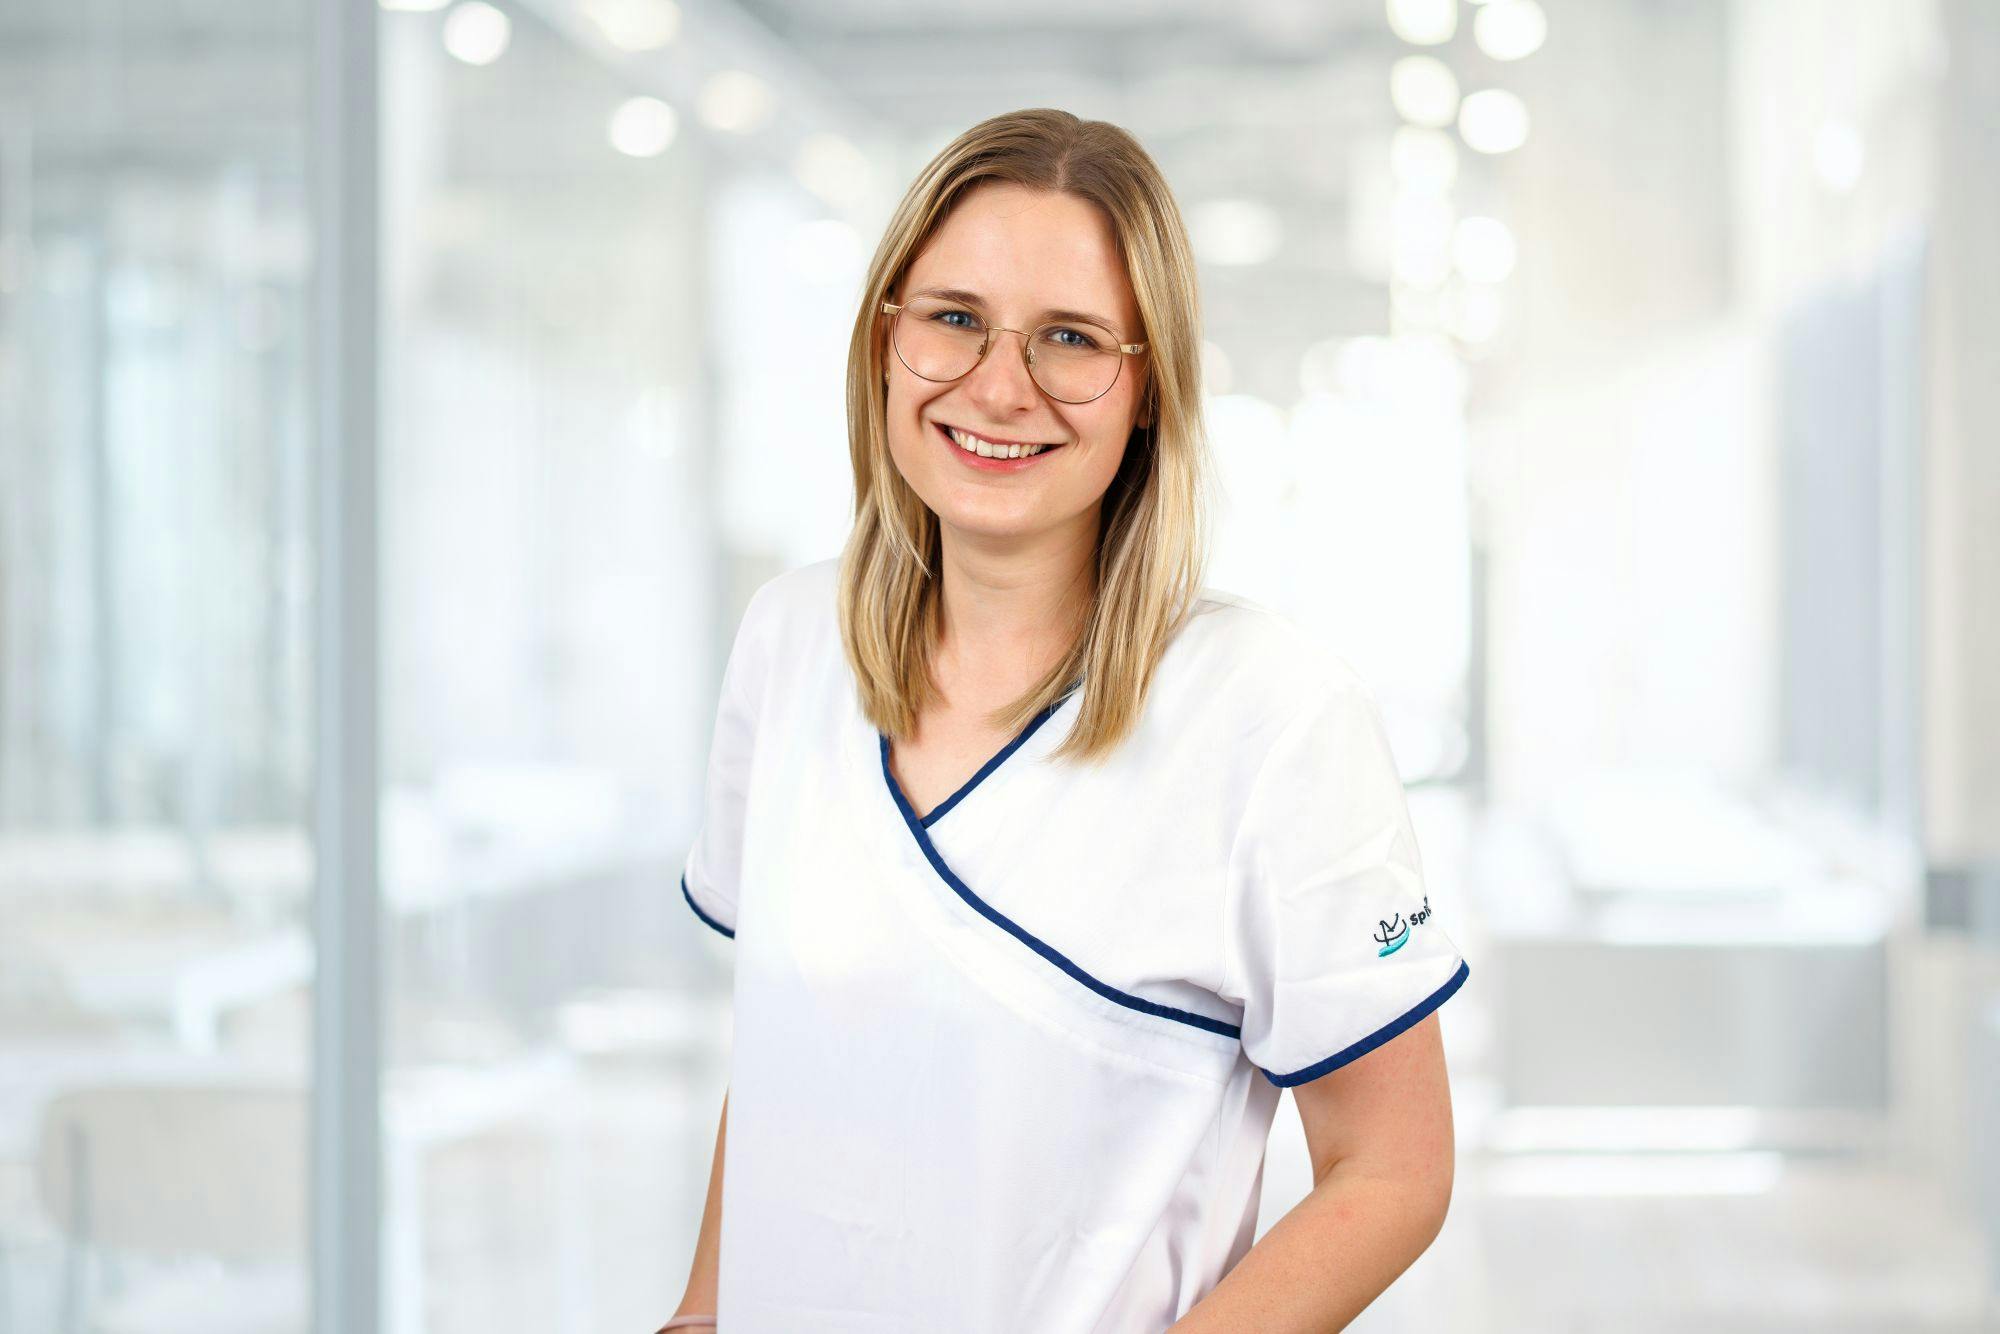 Junge lächelnde Krankenschwester im Berufskleid mit Brille vor unscharfem Klinik-Hintergrund.